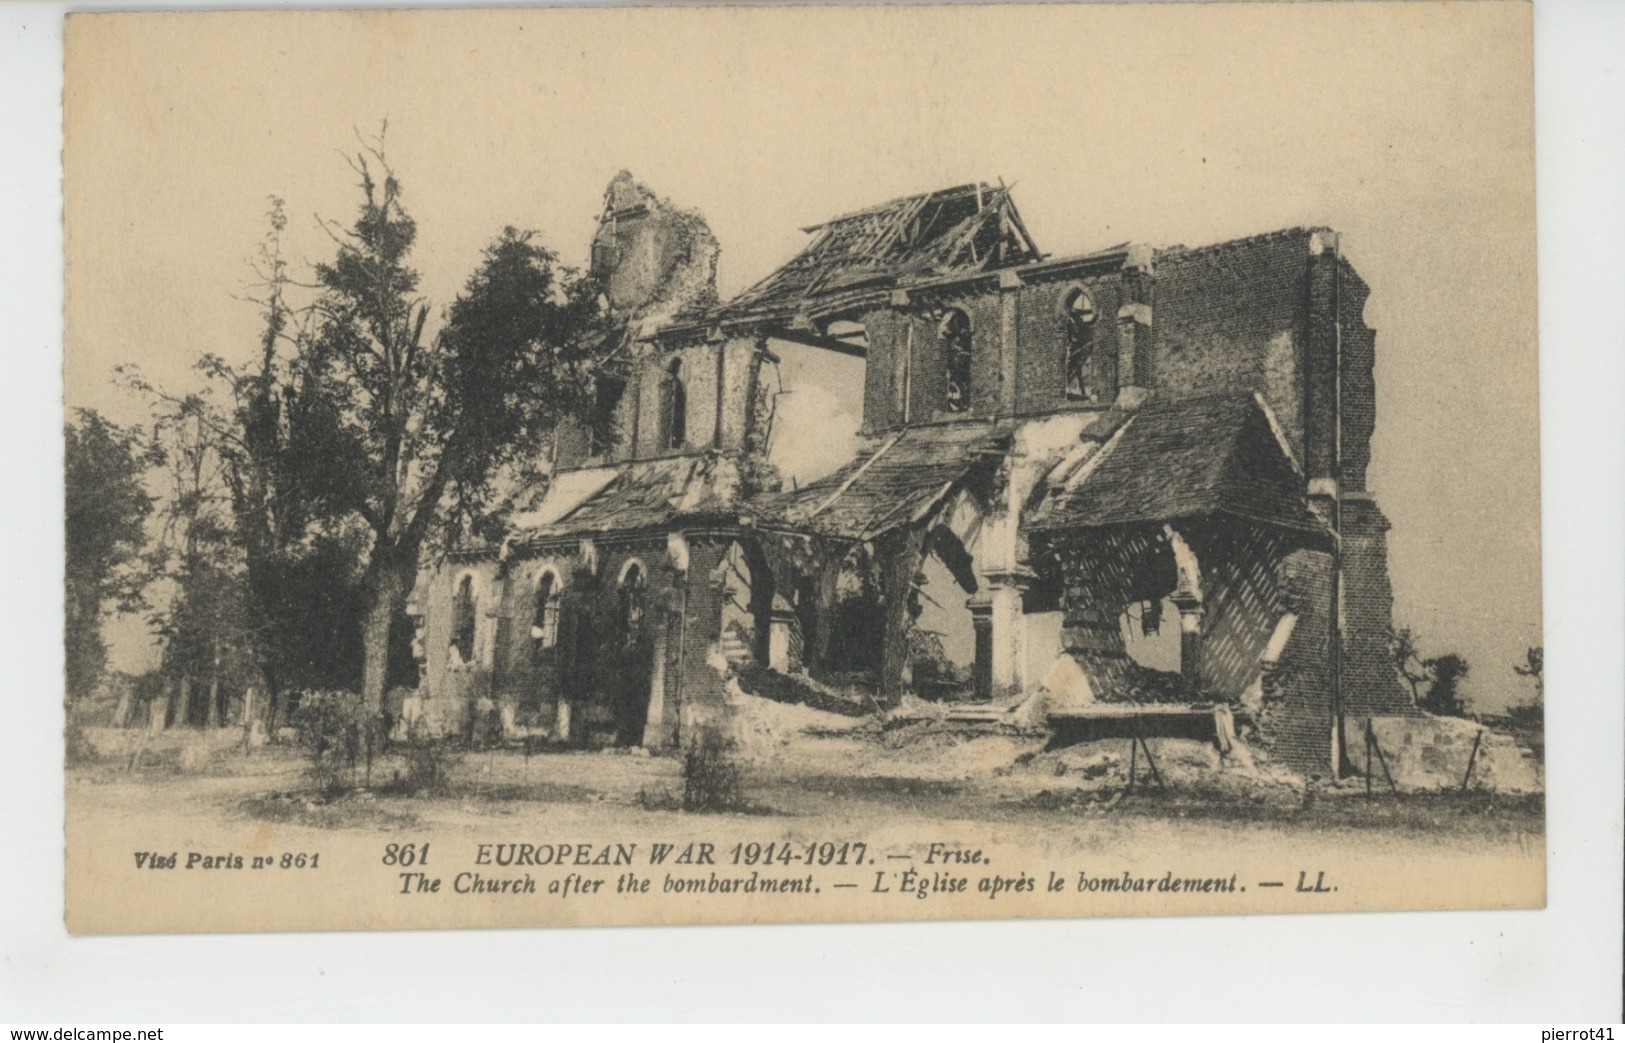 Carte PUB Pour BONBONS DU PERE ANTONIO (antitussifs) Avec Vue De FRISE (Église Bombardée ) Pendant La GUERRE 1914-18 - Publicité